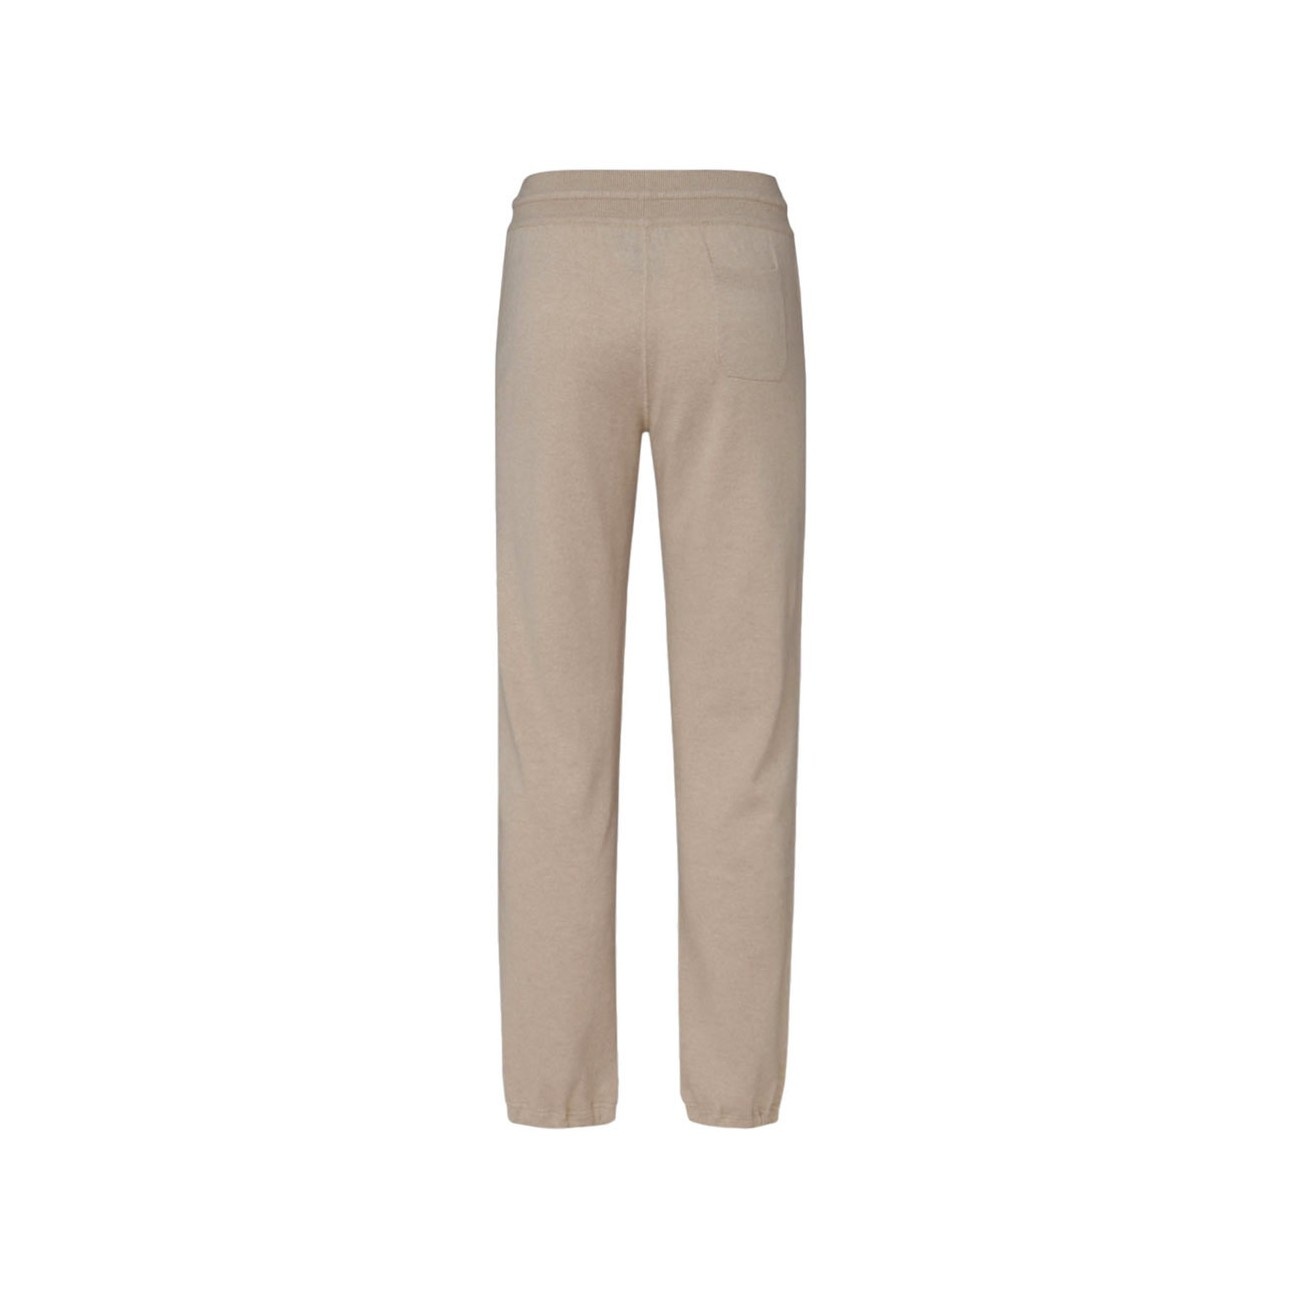 brown wool pants - 2